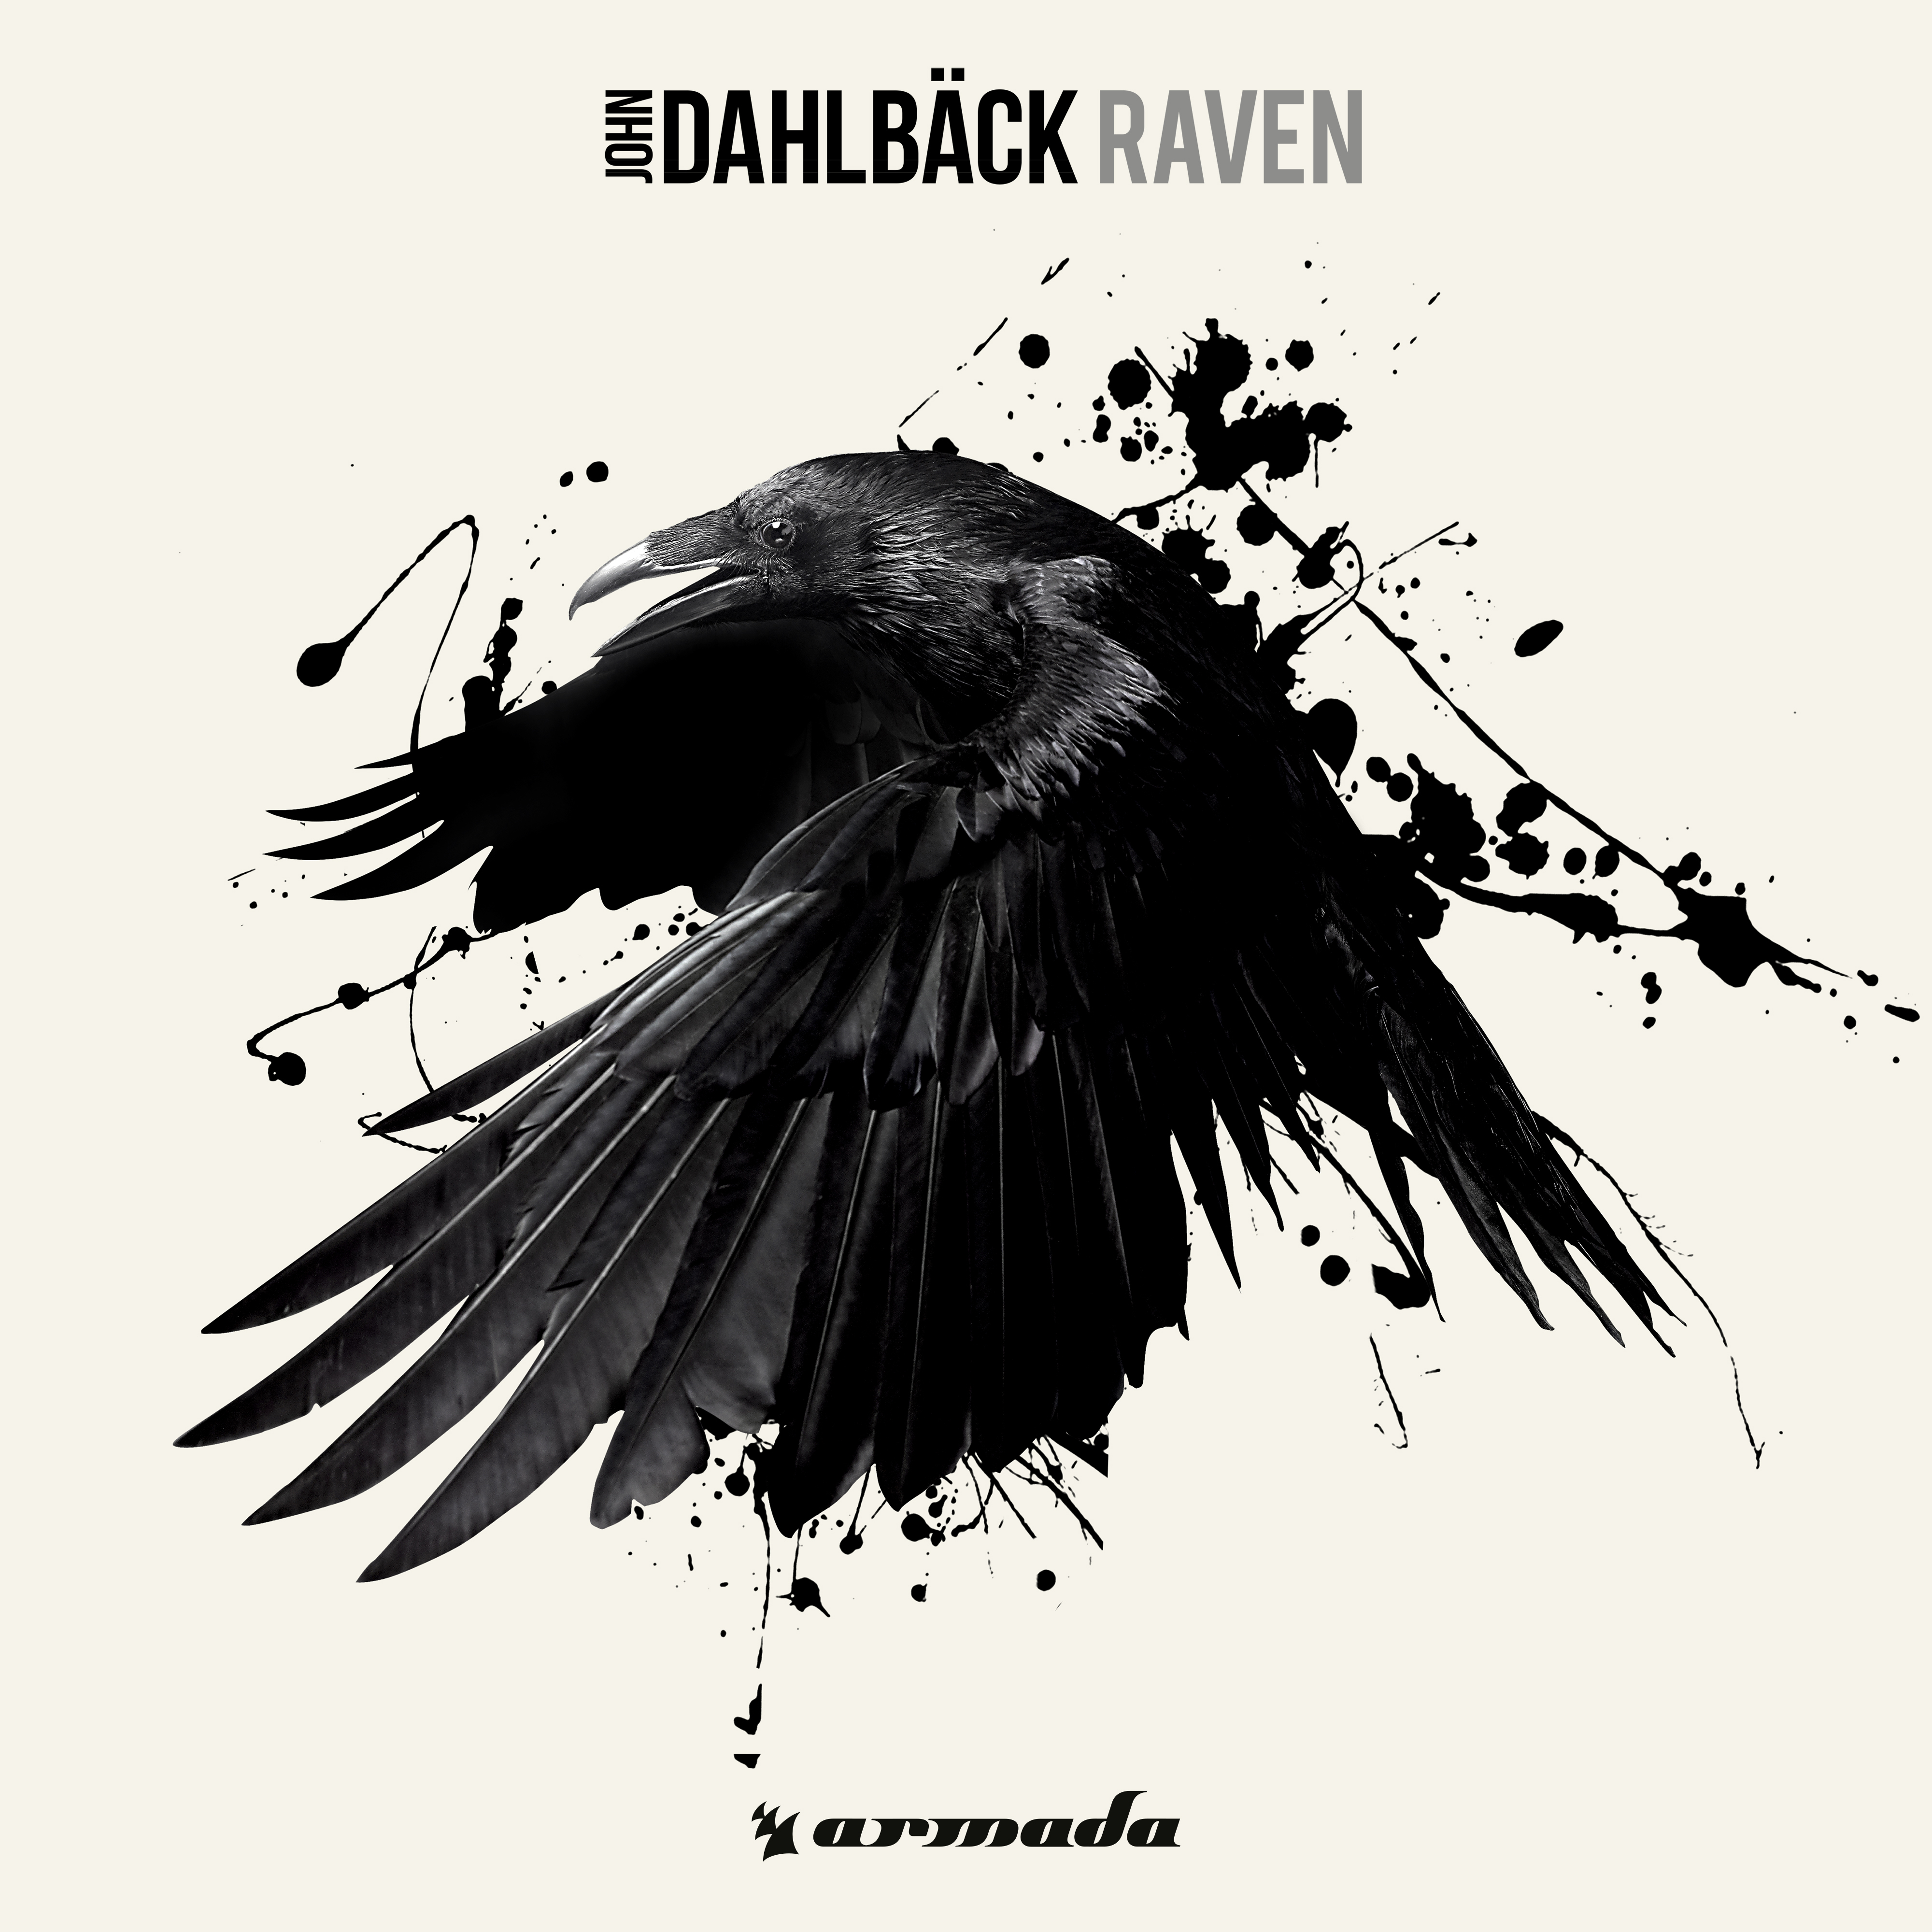 Raven (Original Mix)